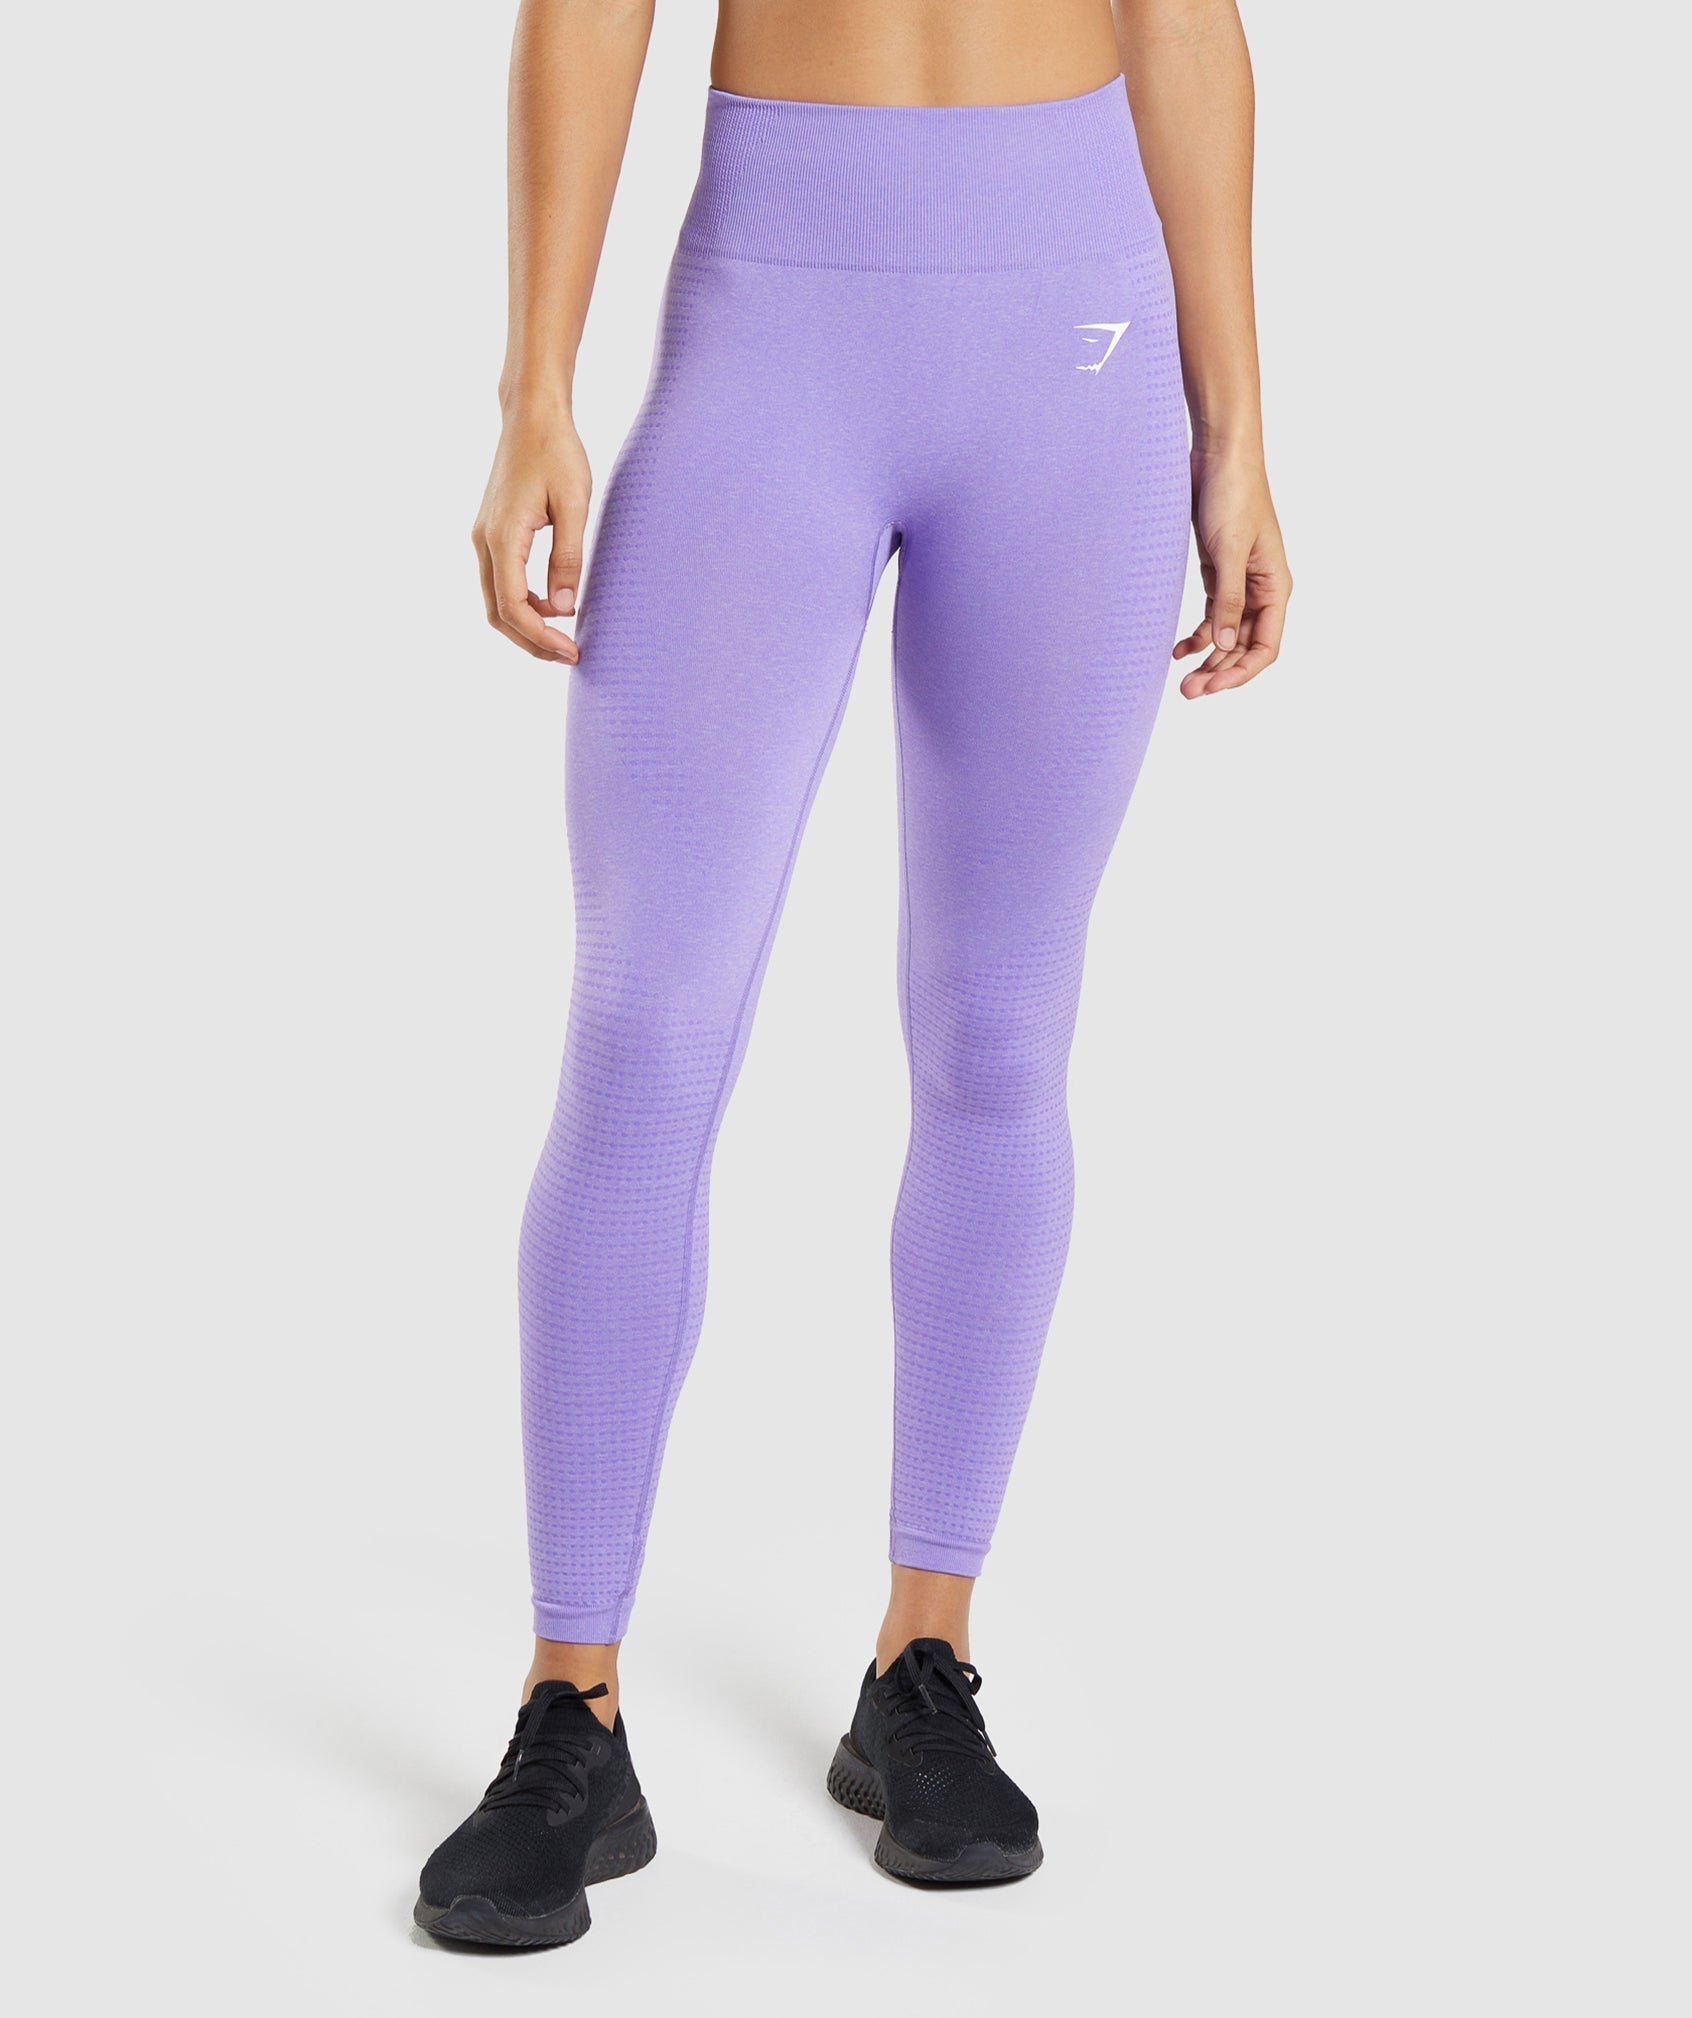 Gymshark Women's Purple Leggings Active 24 Gym Pants Size: M